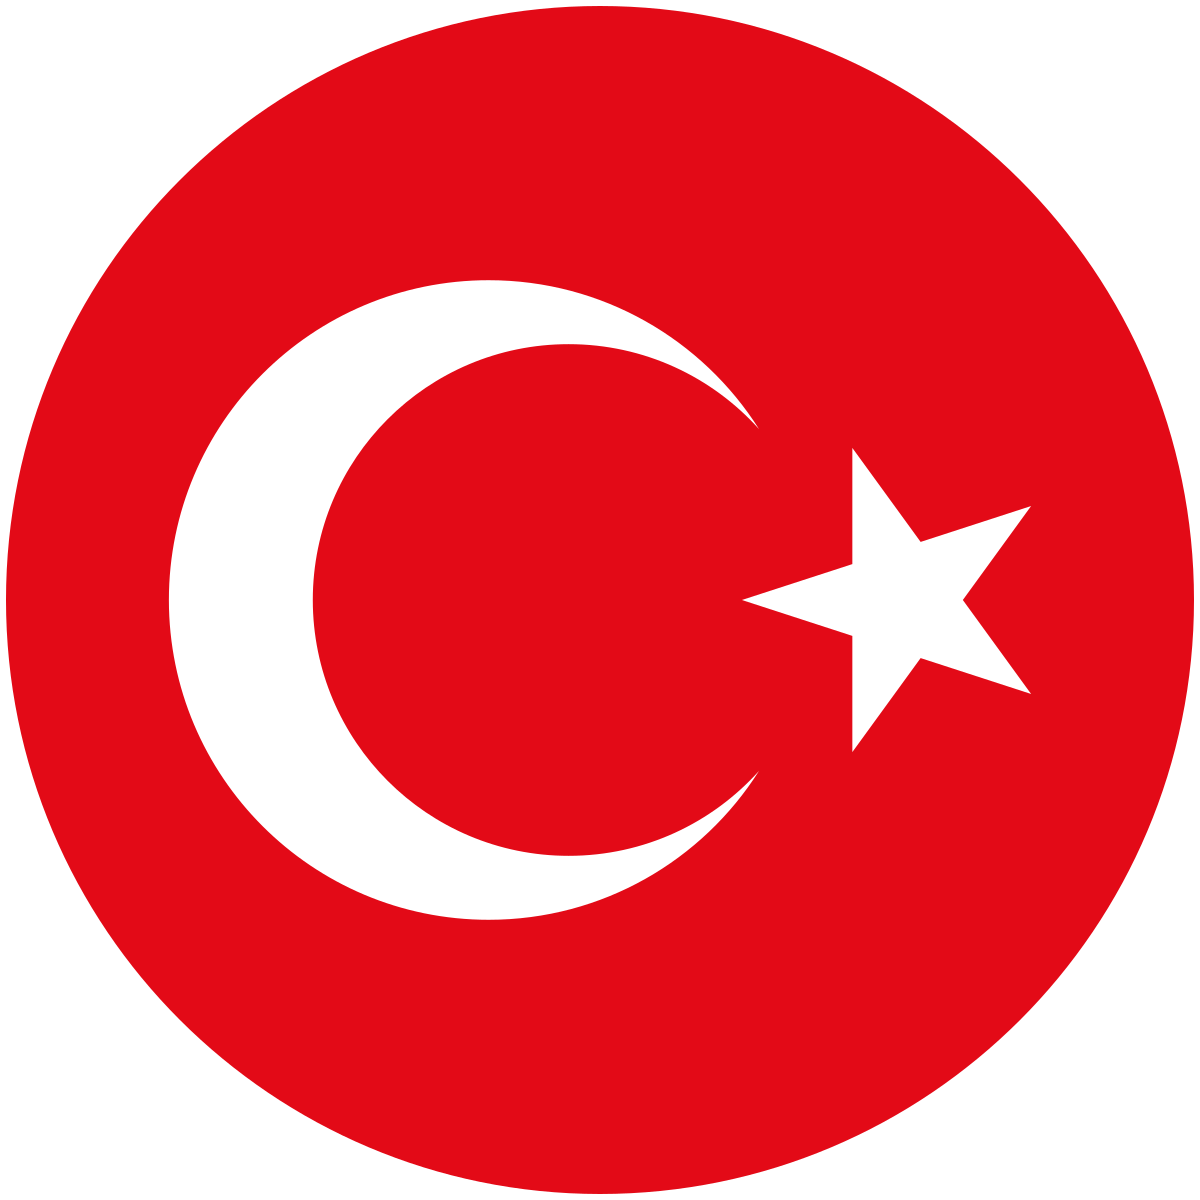 Turkey national football team